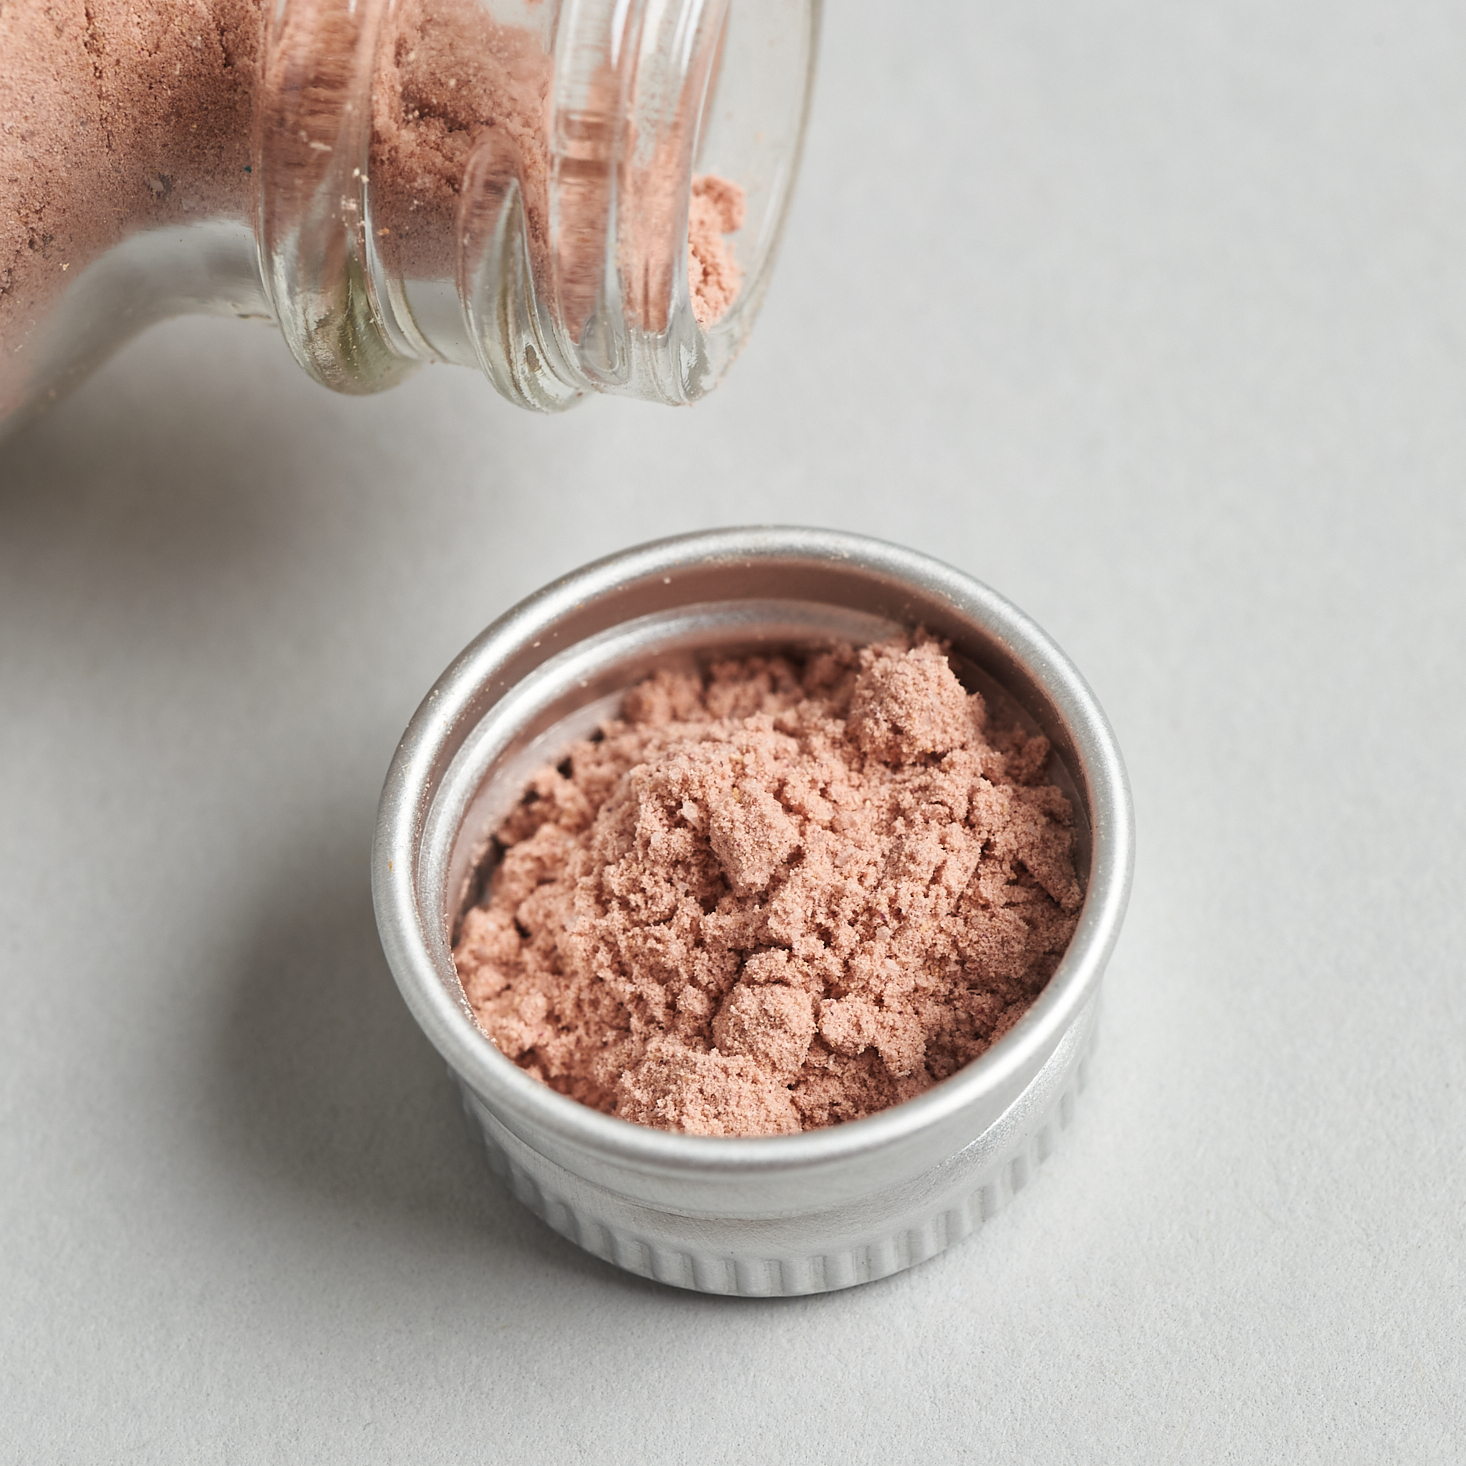 Emanate Essentials Cami Rose Exfoliating Grains Close-Up2 for Nourish Beauty Box September 2020